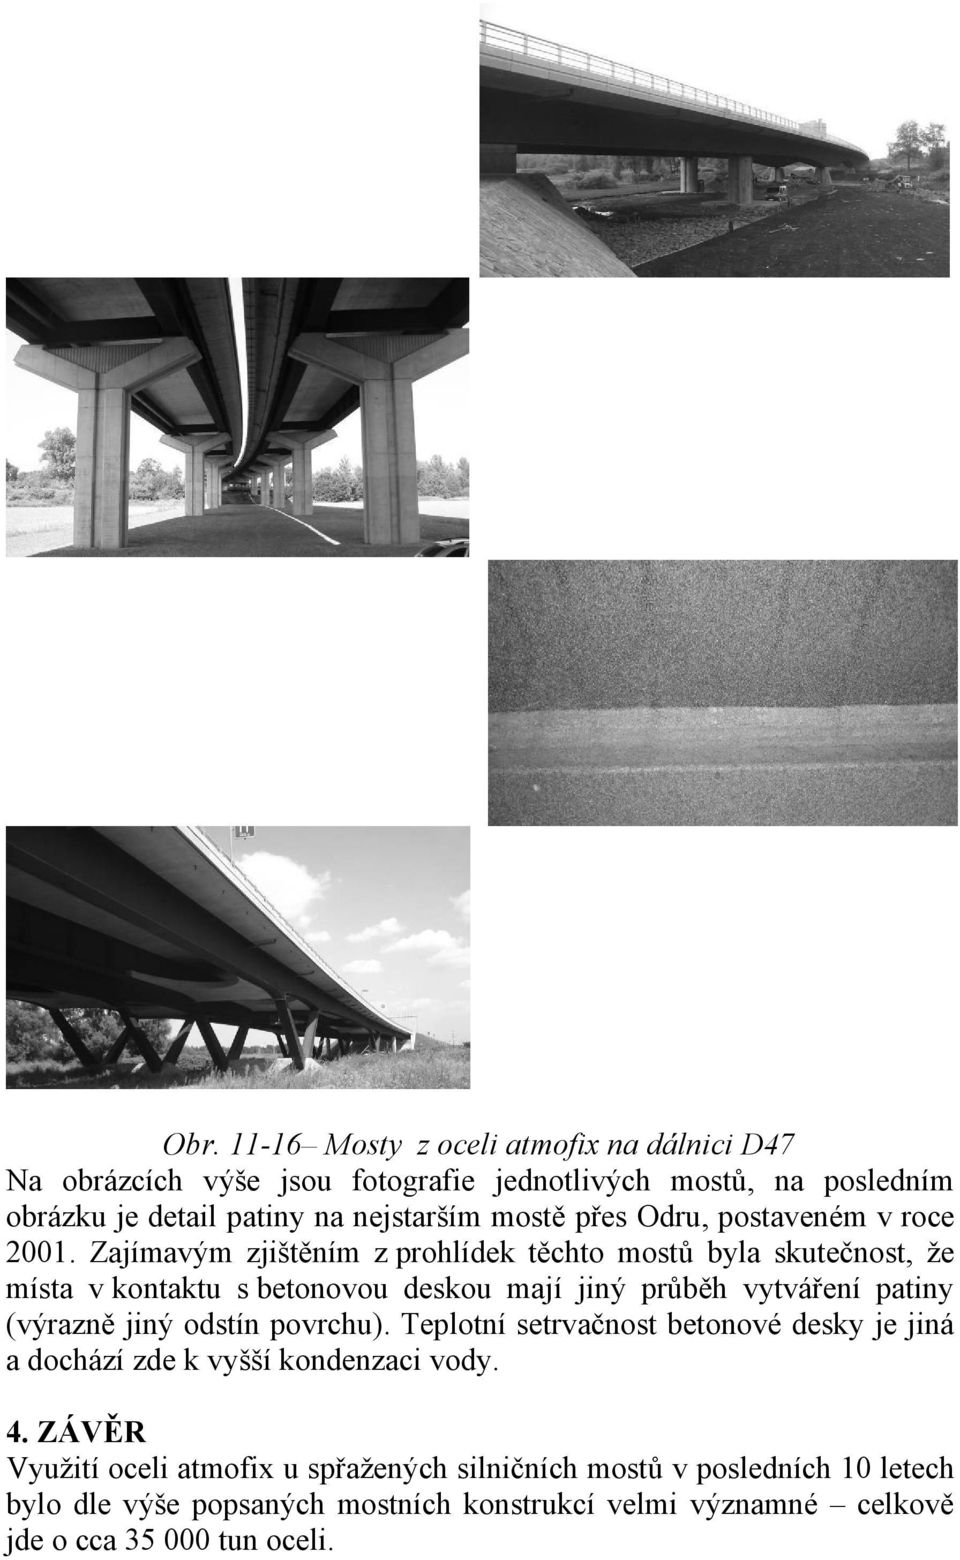 Zajímavým zjištěním z prohlídek těchto mostů byla skutečnost, že místa v kontaktu s betonovou deskou mají jiný průběh vytváření patiny (výrazně jiný odstín